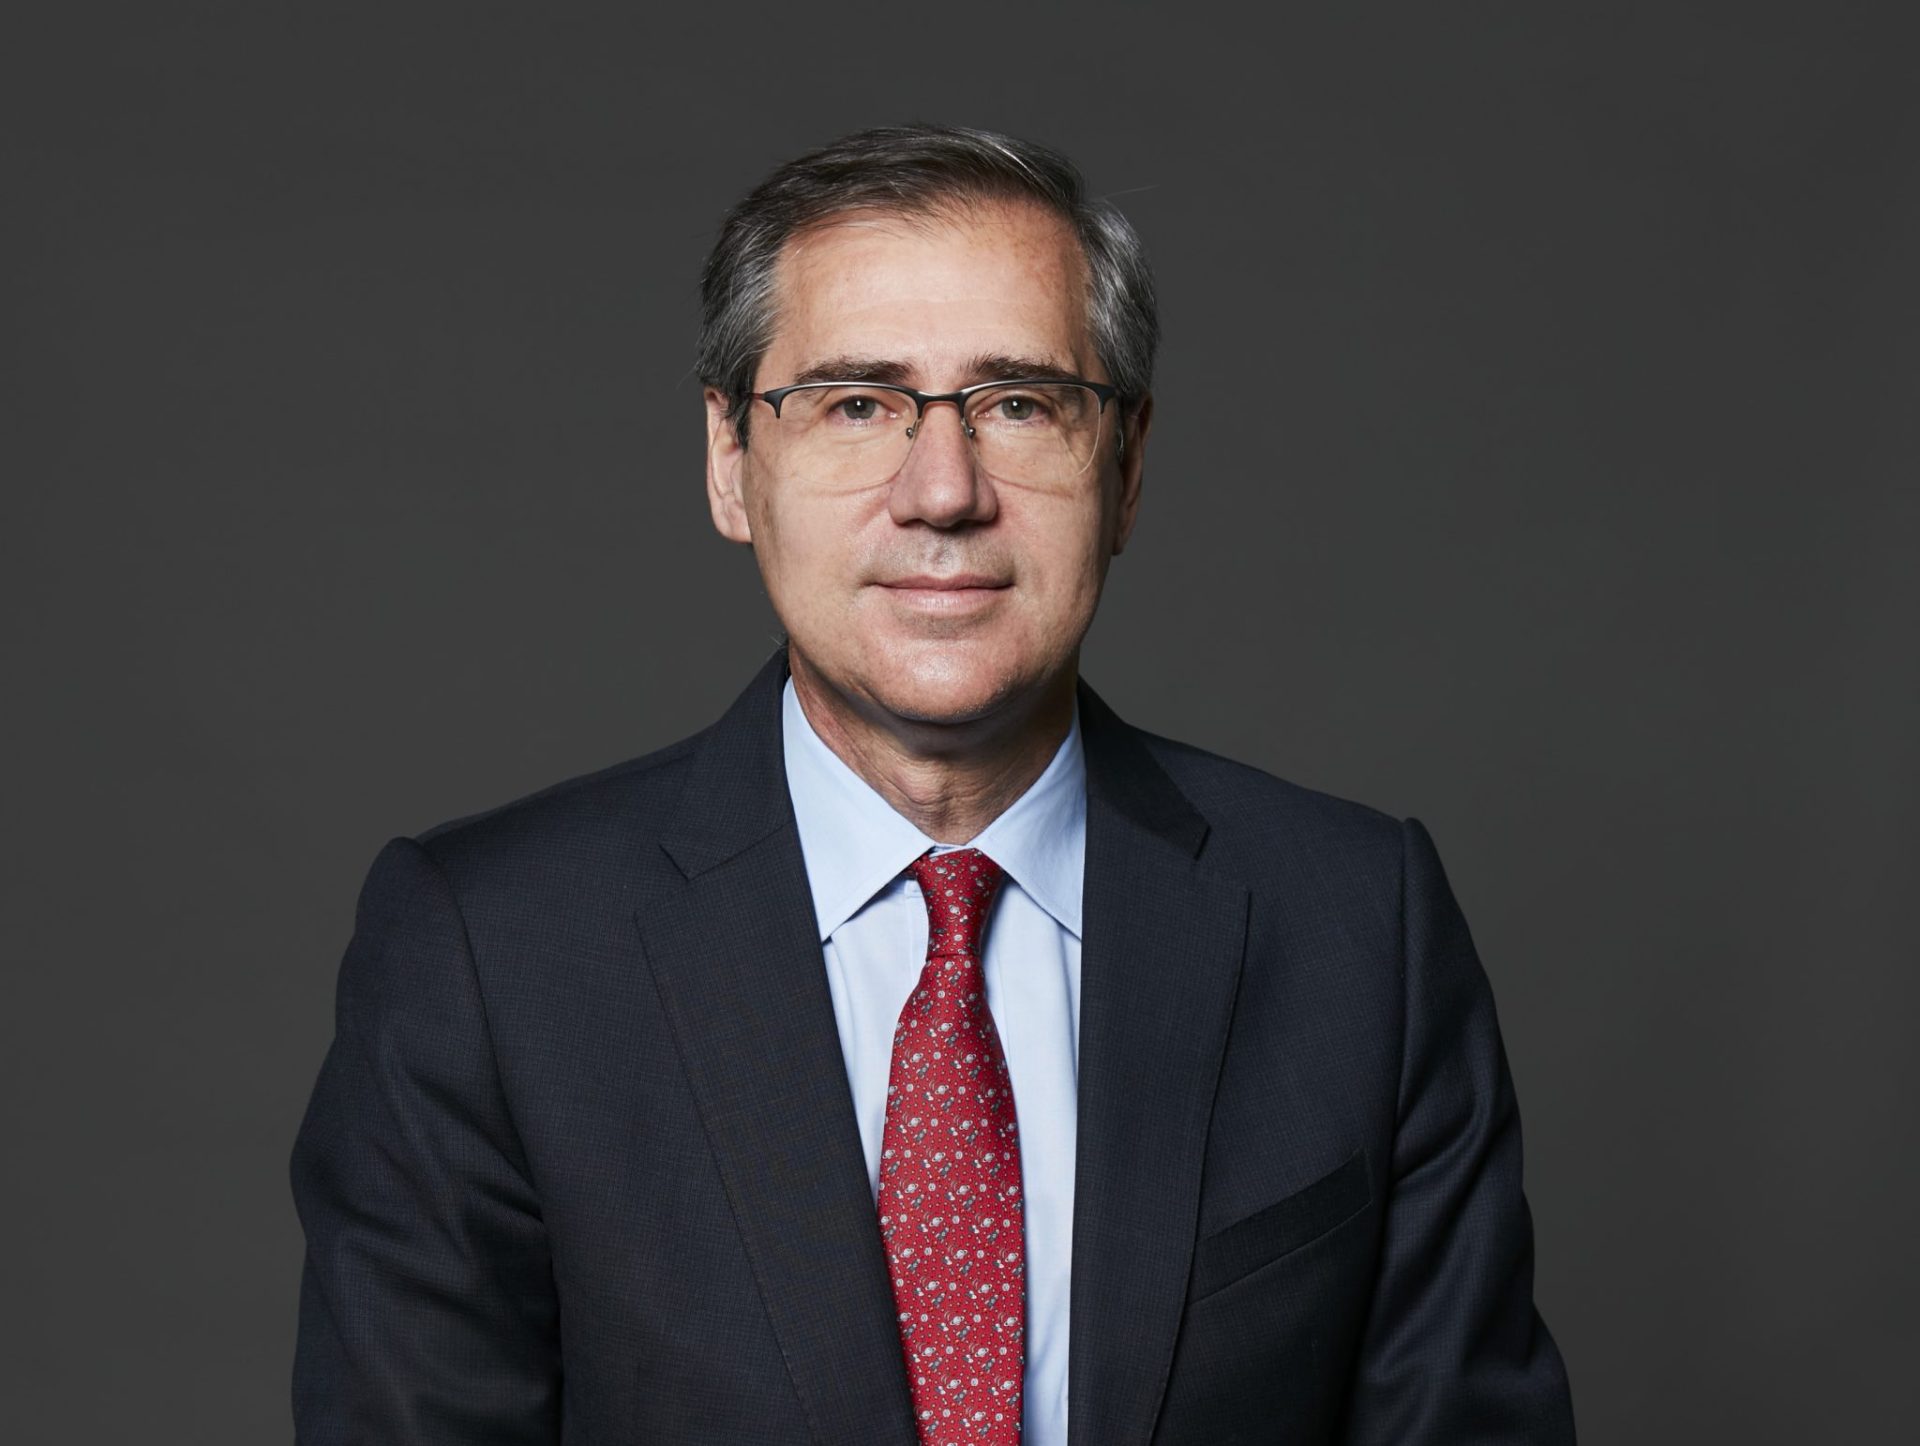 Ignacio-Madridejos-Chief-Executive-Officer-CEO-Ferrovial